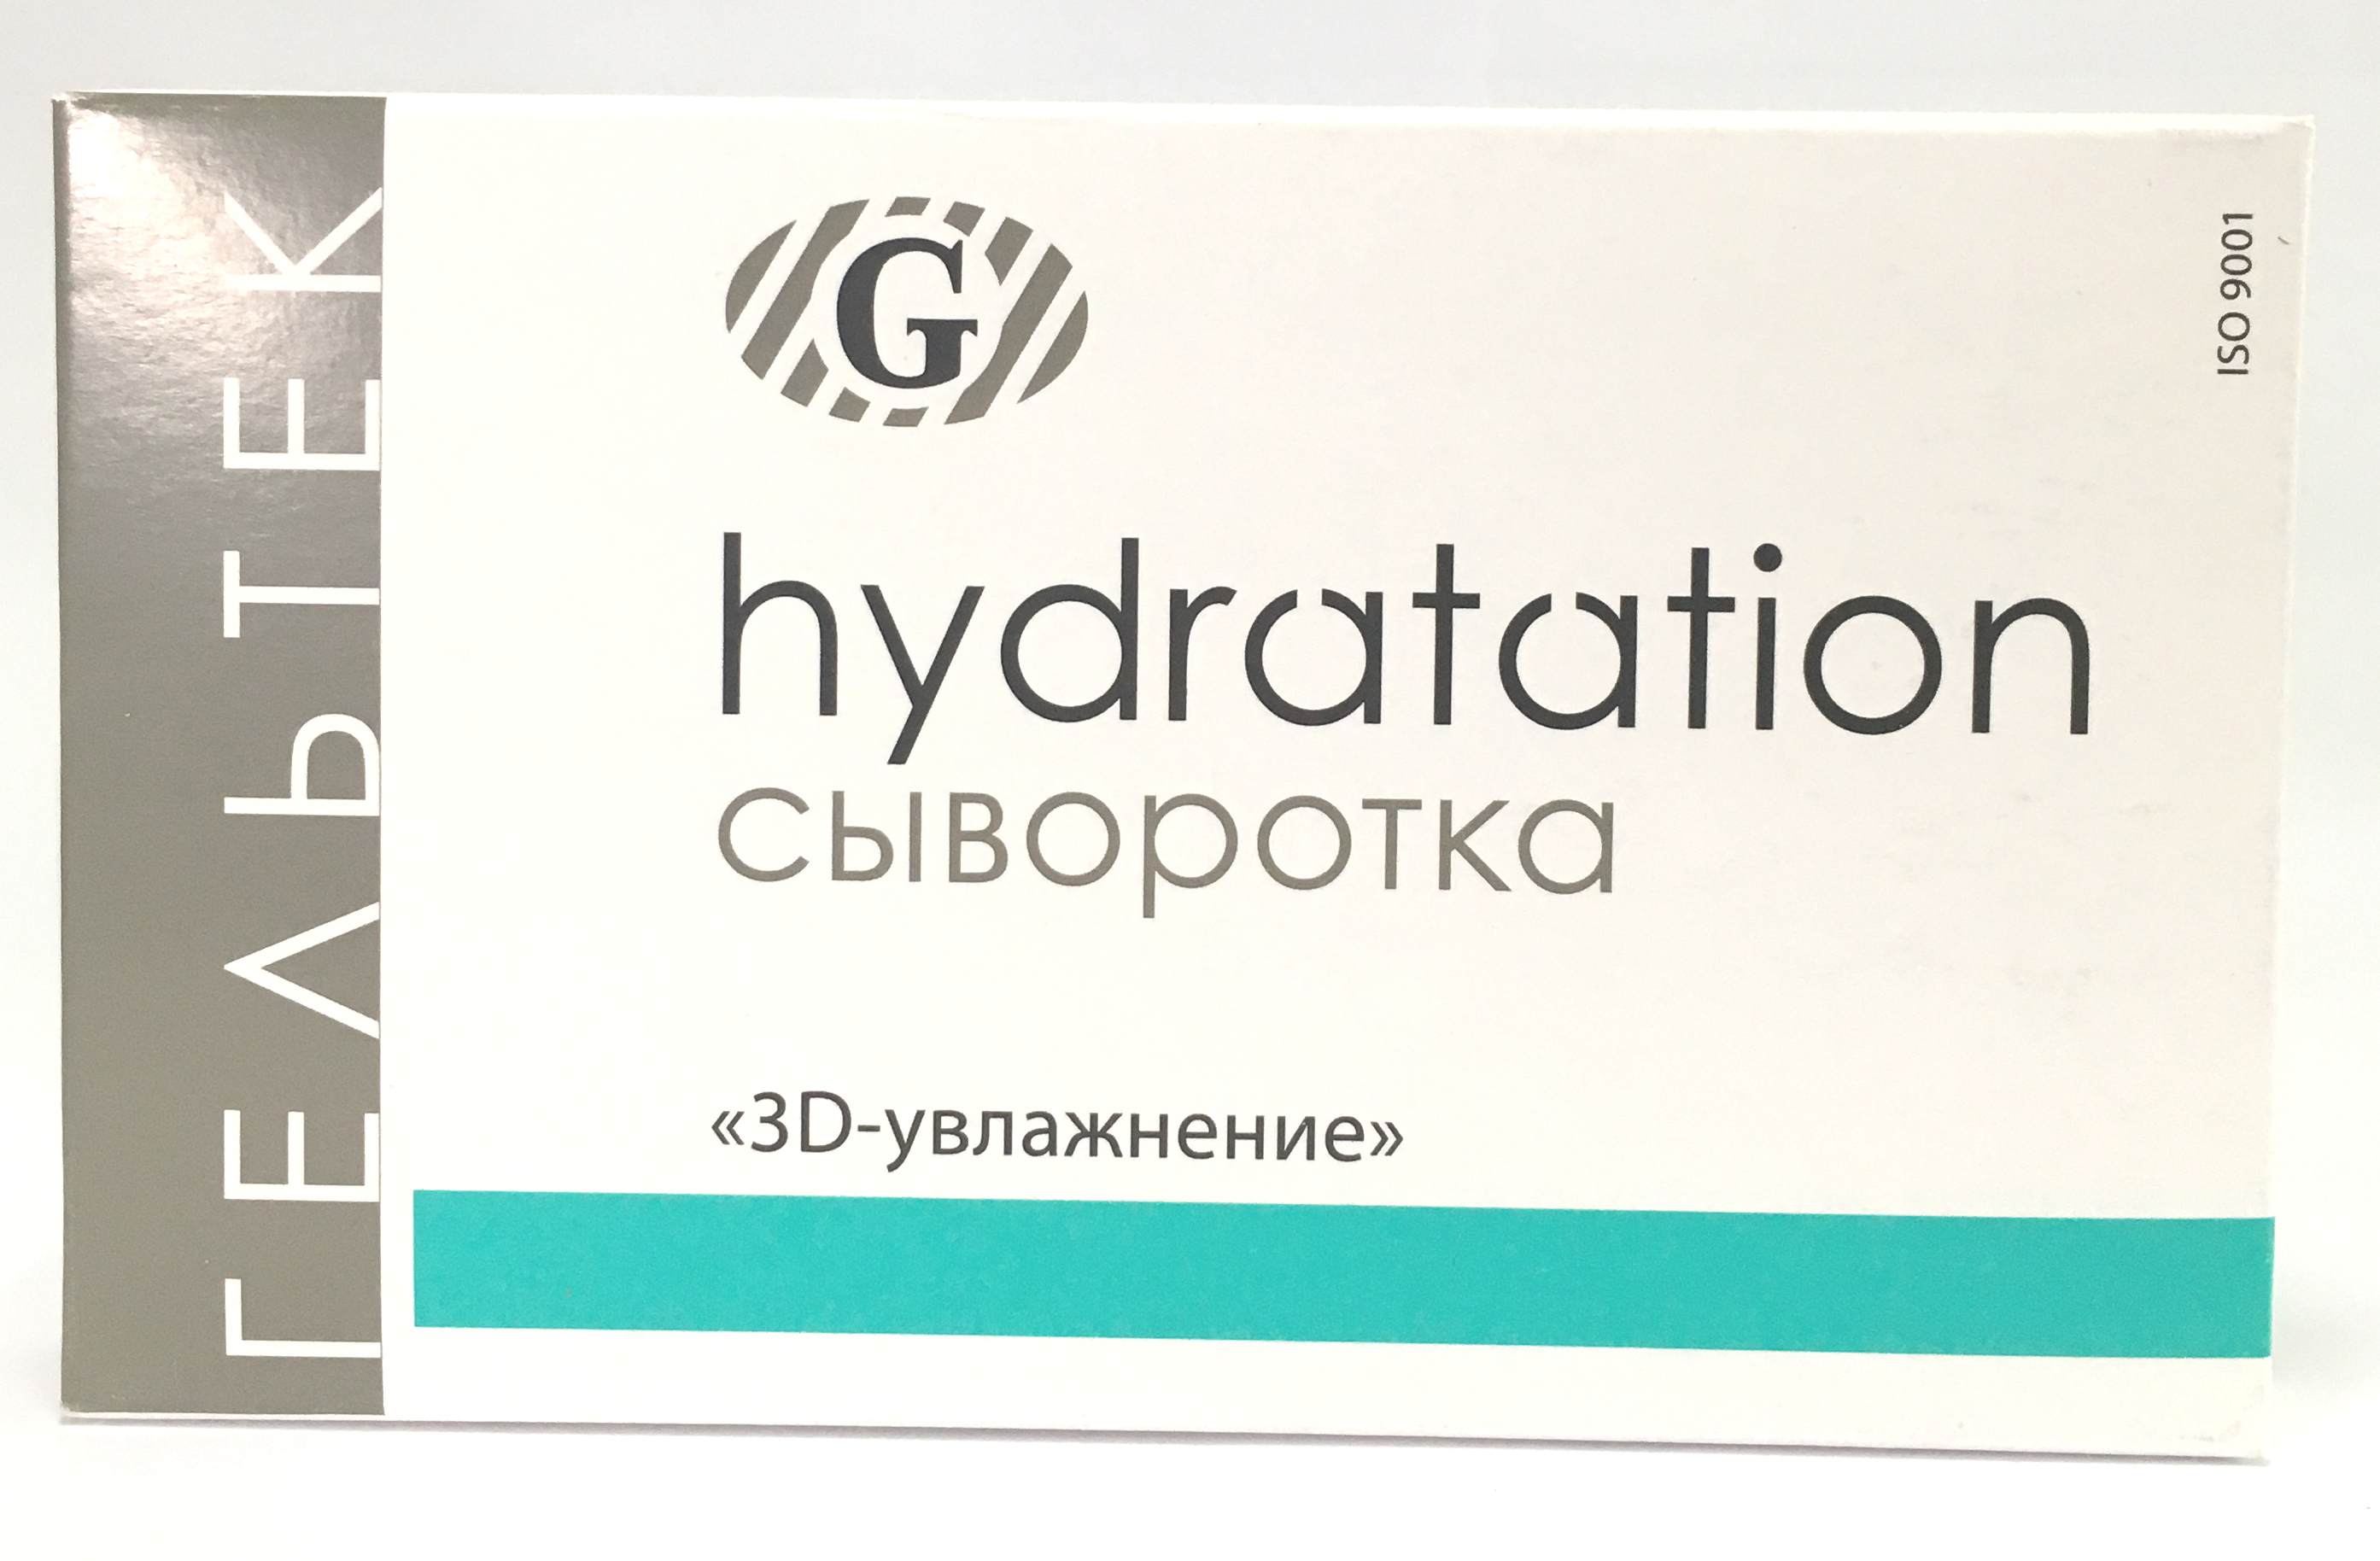 Сыворотка "3D-УВЛАЖНЕНИЕ" упаковка 5 шт монодоз по 5 мл (ГЕЛЬТЕК)